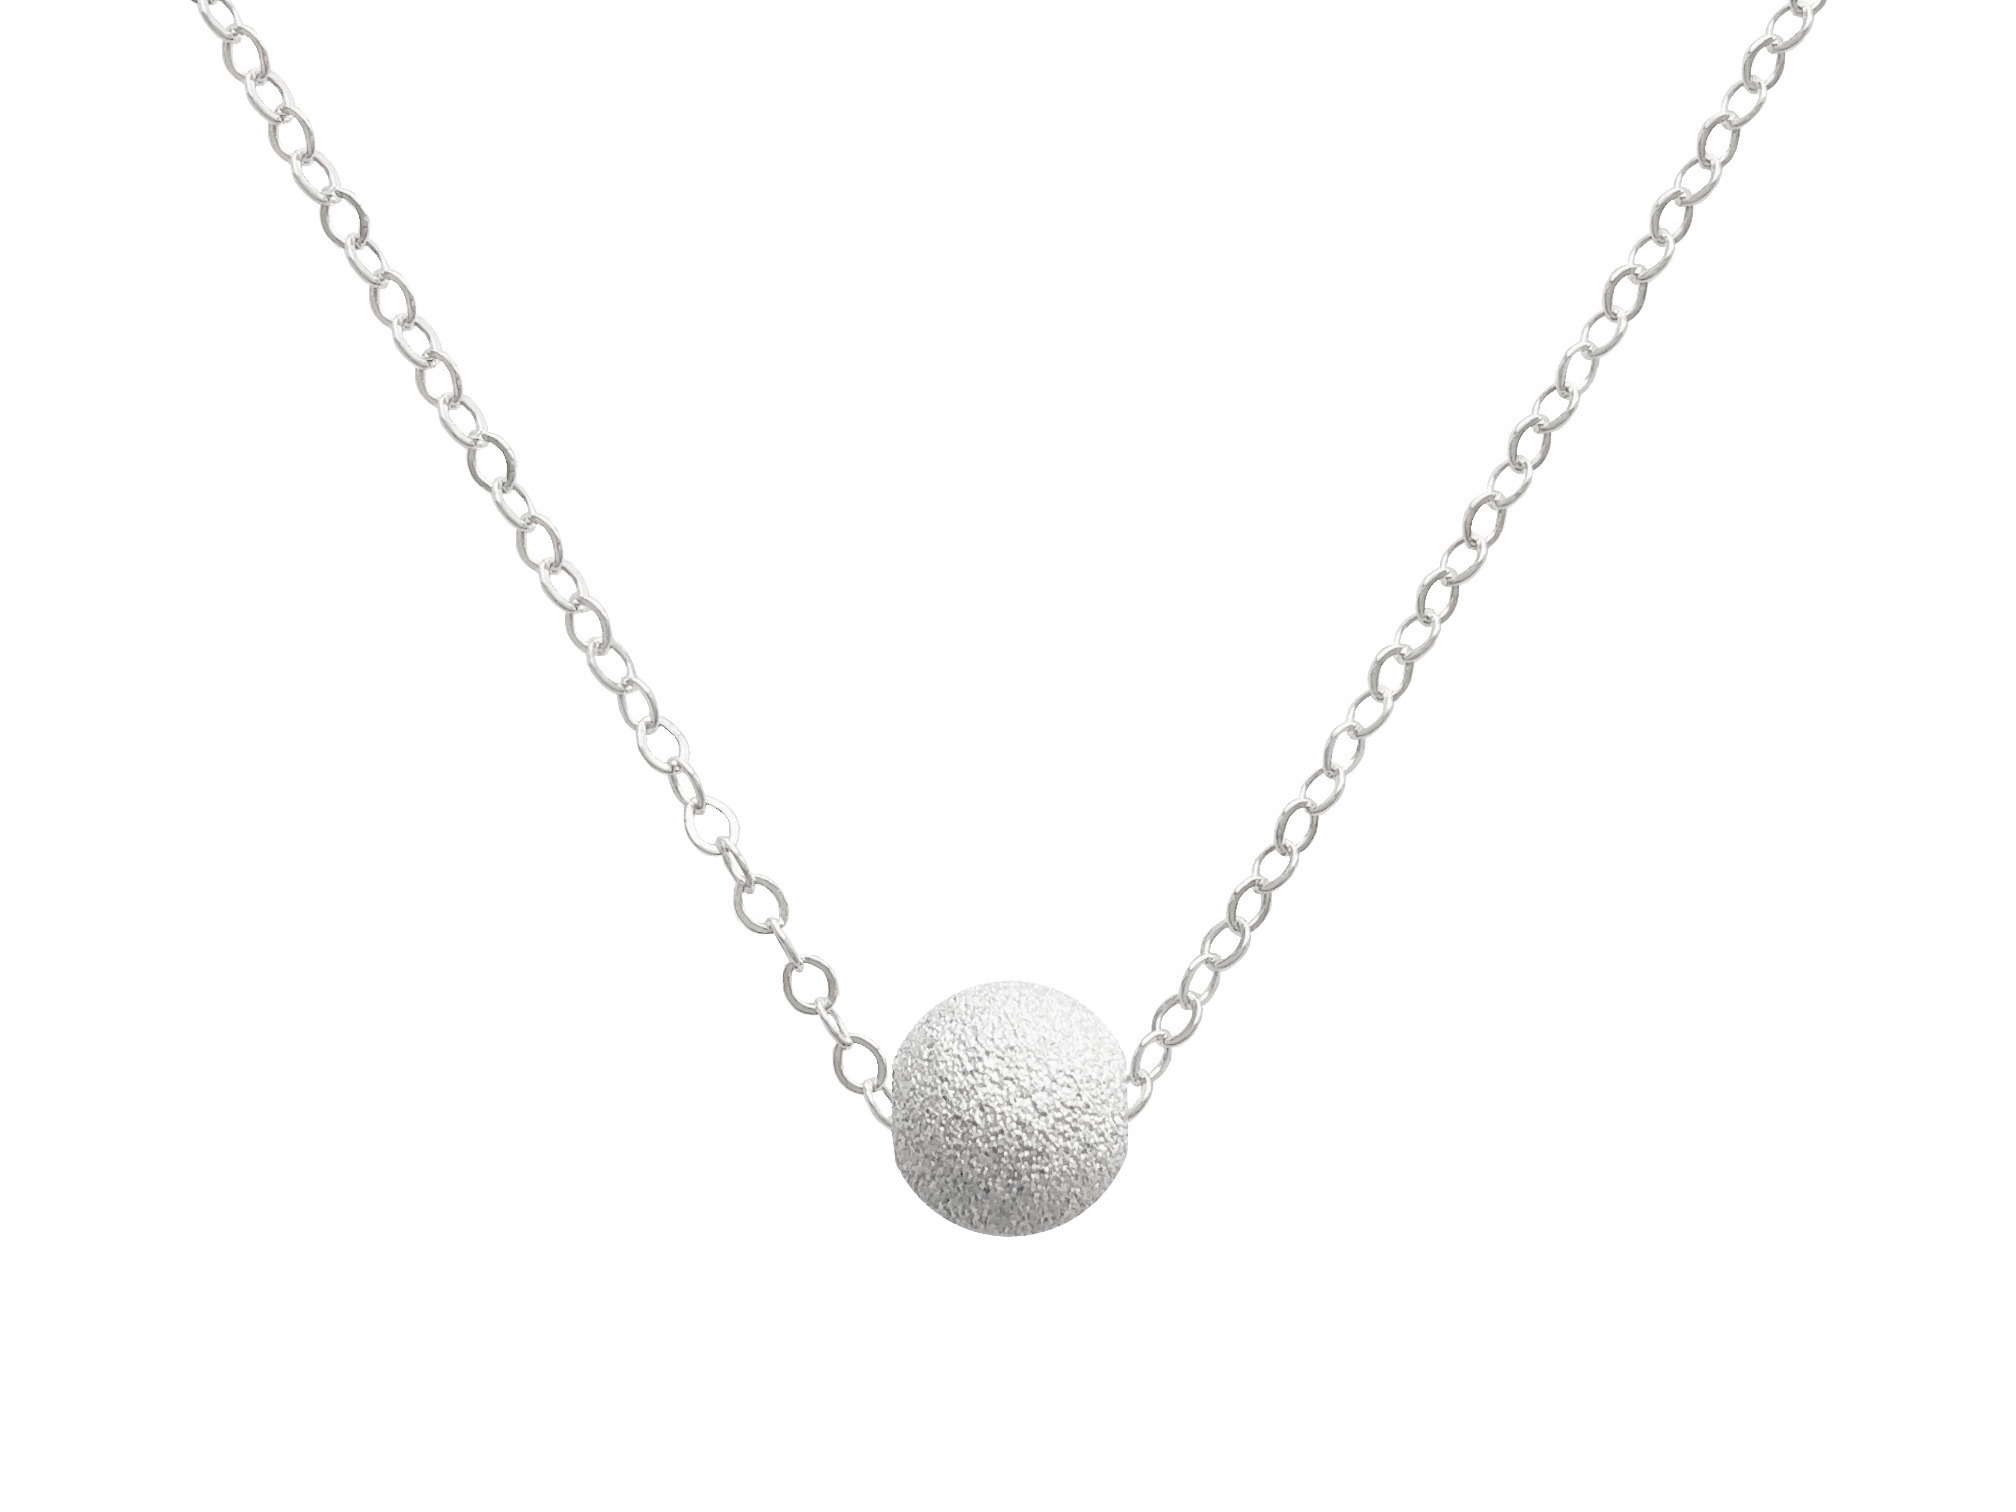 Collier LAMIA argent massif 925 pendentif perle pailletée-ras du cou-minimaliste-bohème- MARJANE et Cie